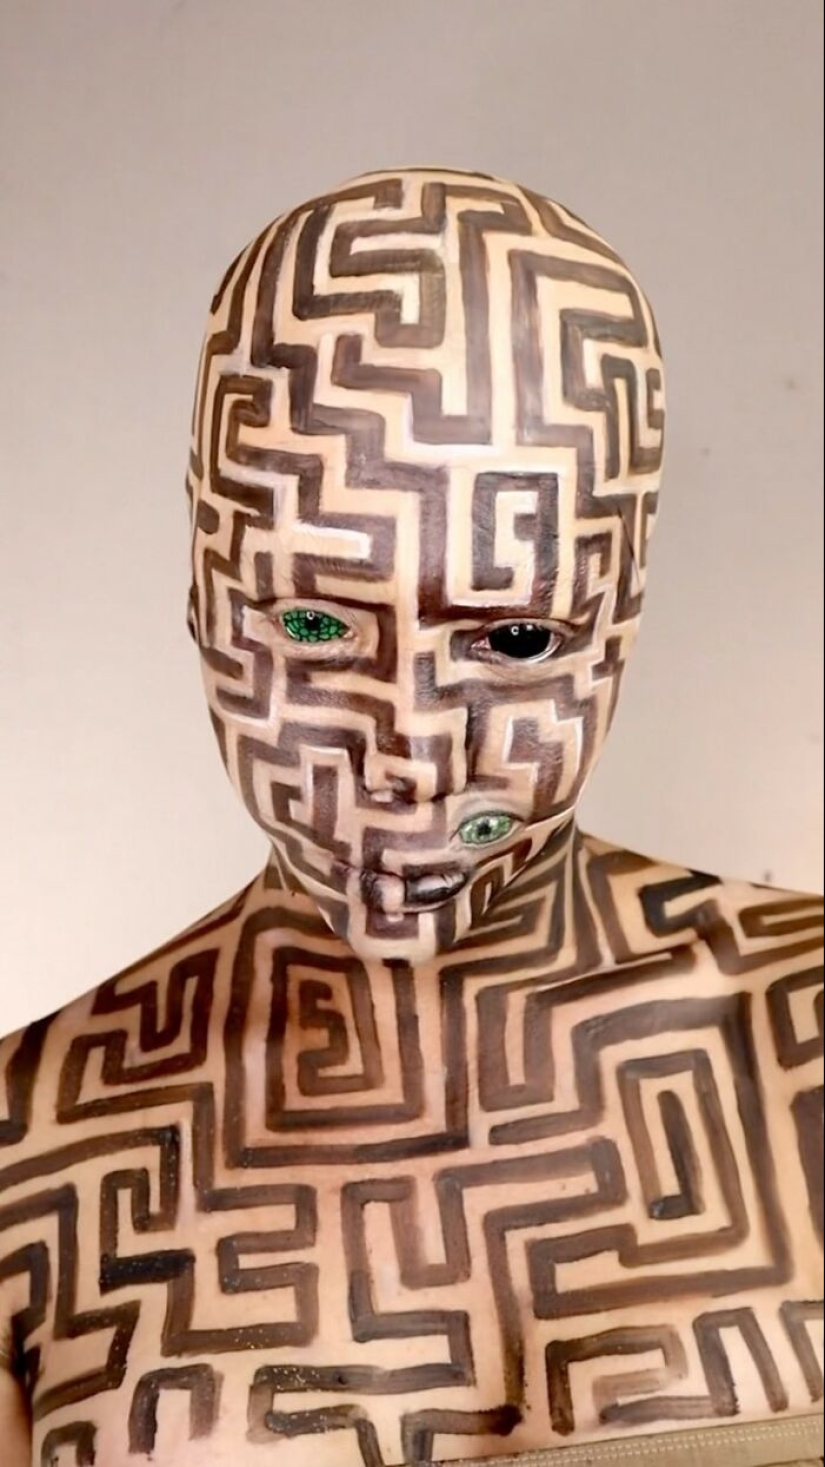 15 impresionantes transformaciones de maquillaje de Kristin Ker Anderson